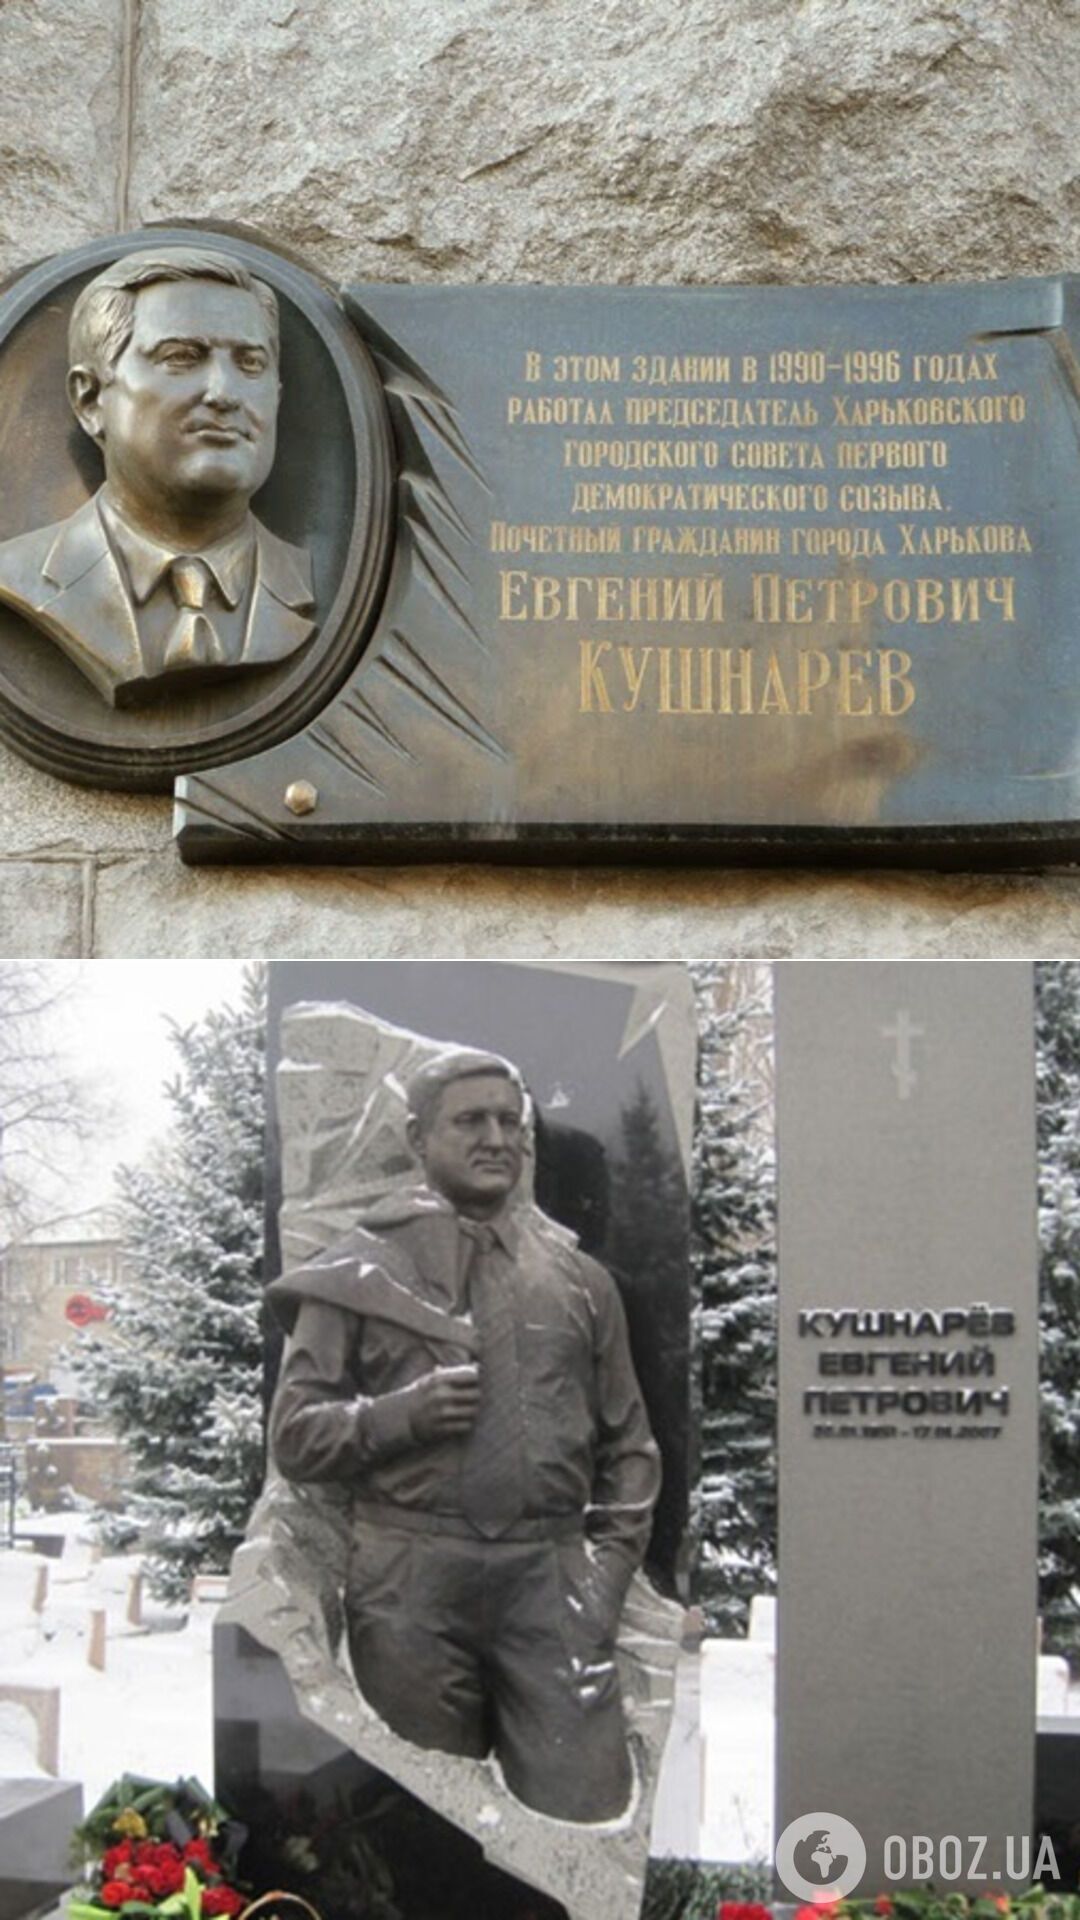 Мемориальная доска в Харькове и памятник на могиле Кушнарева